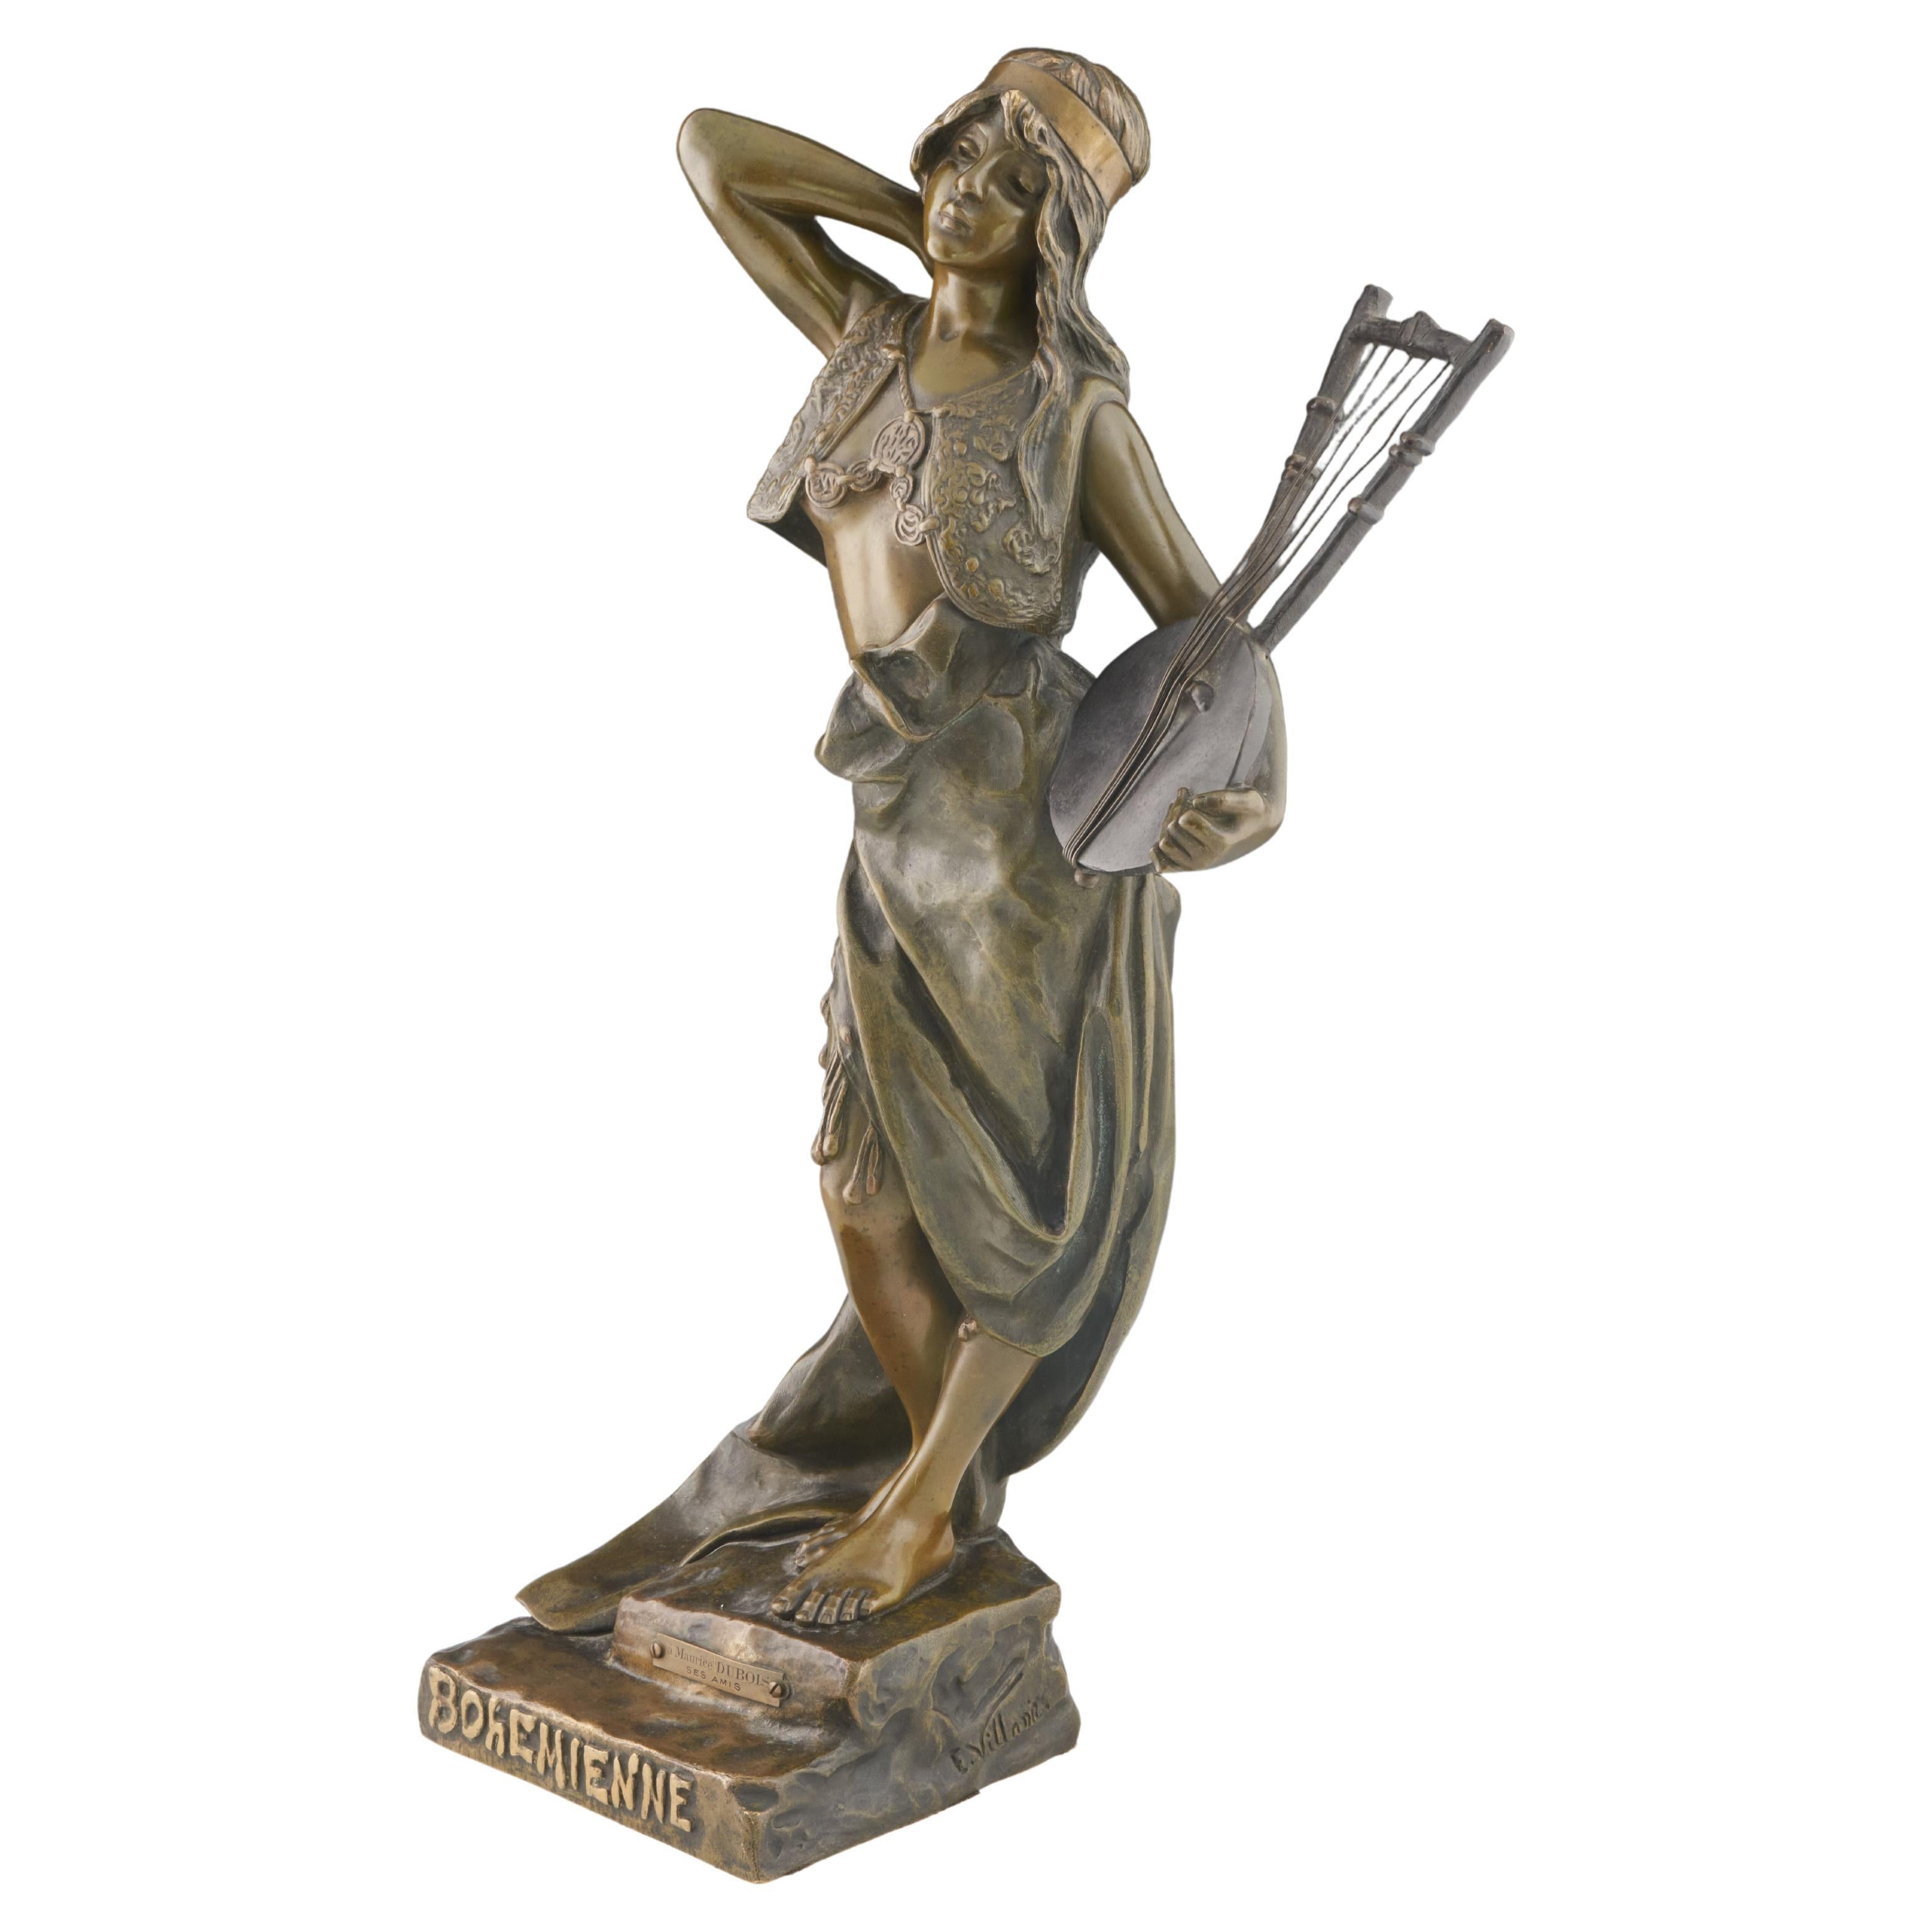 'Bohemienne' Art Nouveau Bronze Sculpture by Emmanuel Villanis, circa 1890 For Sale